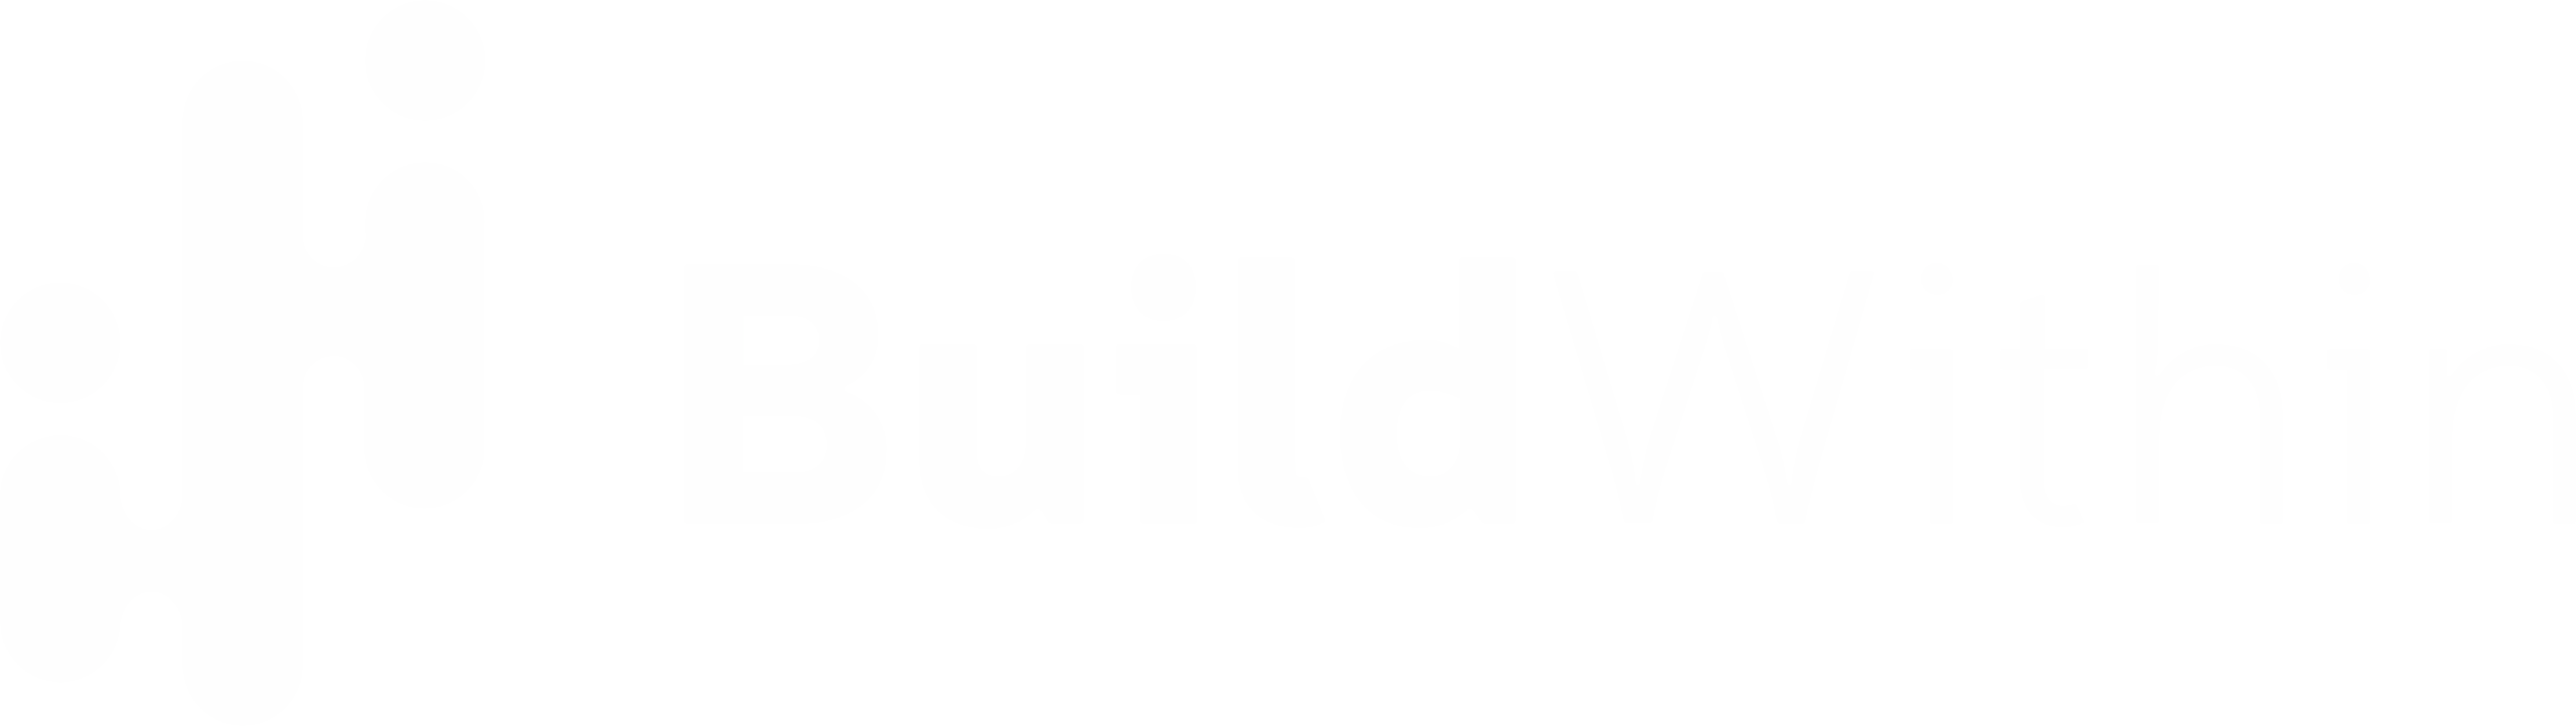 build within white logo